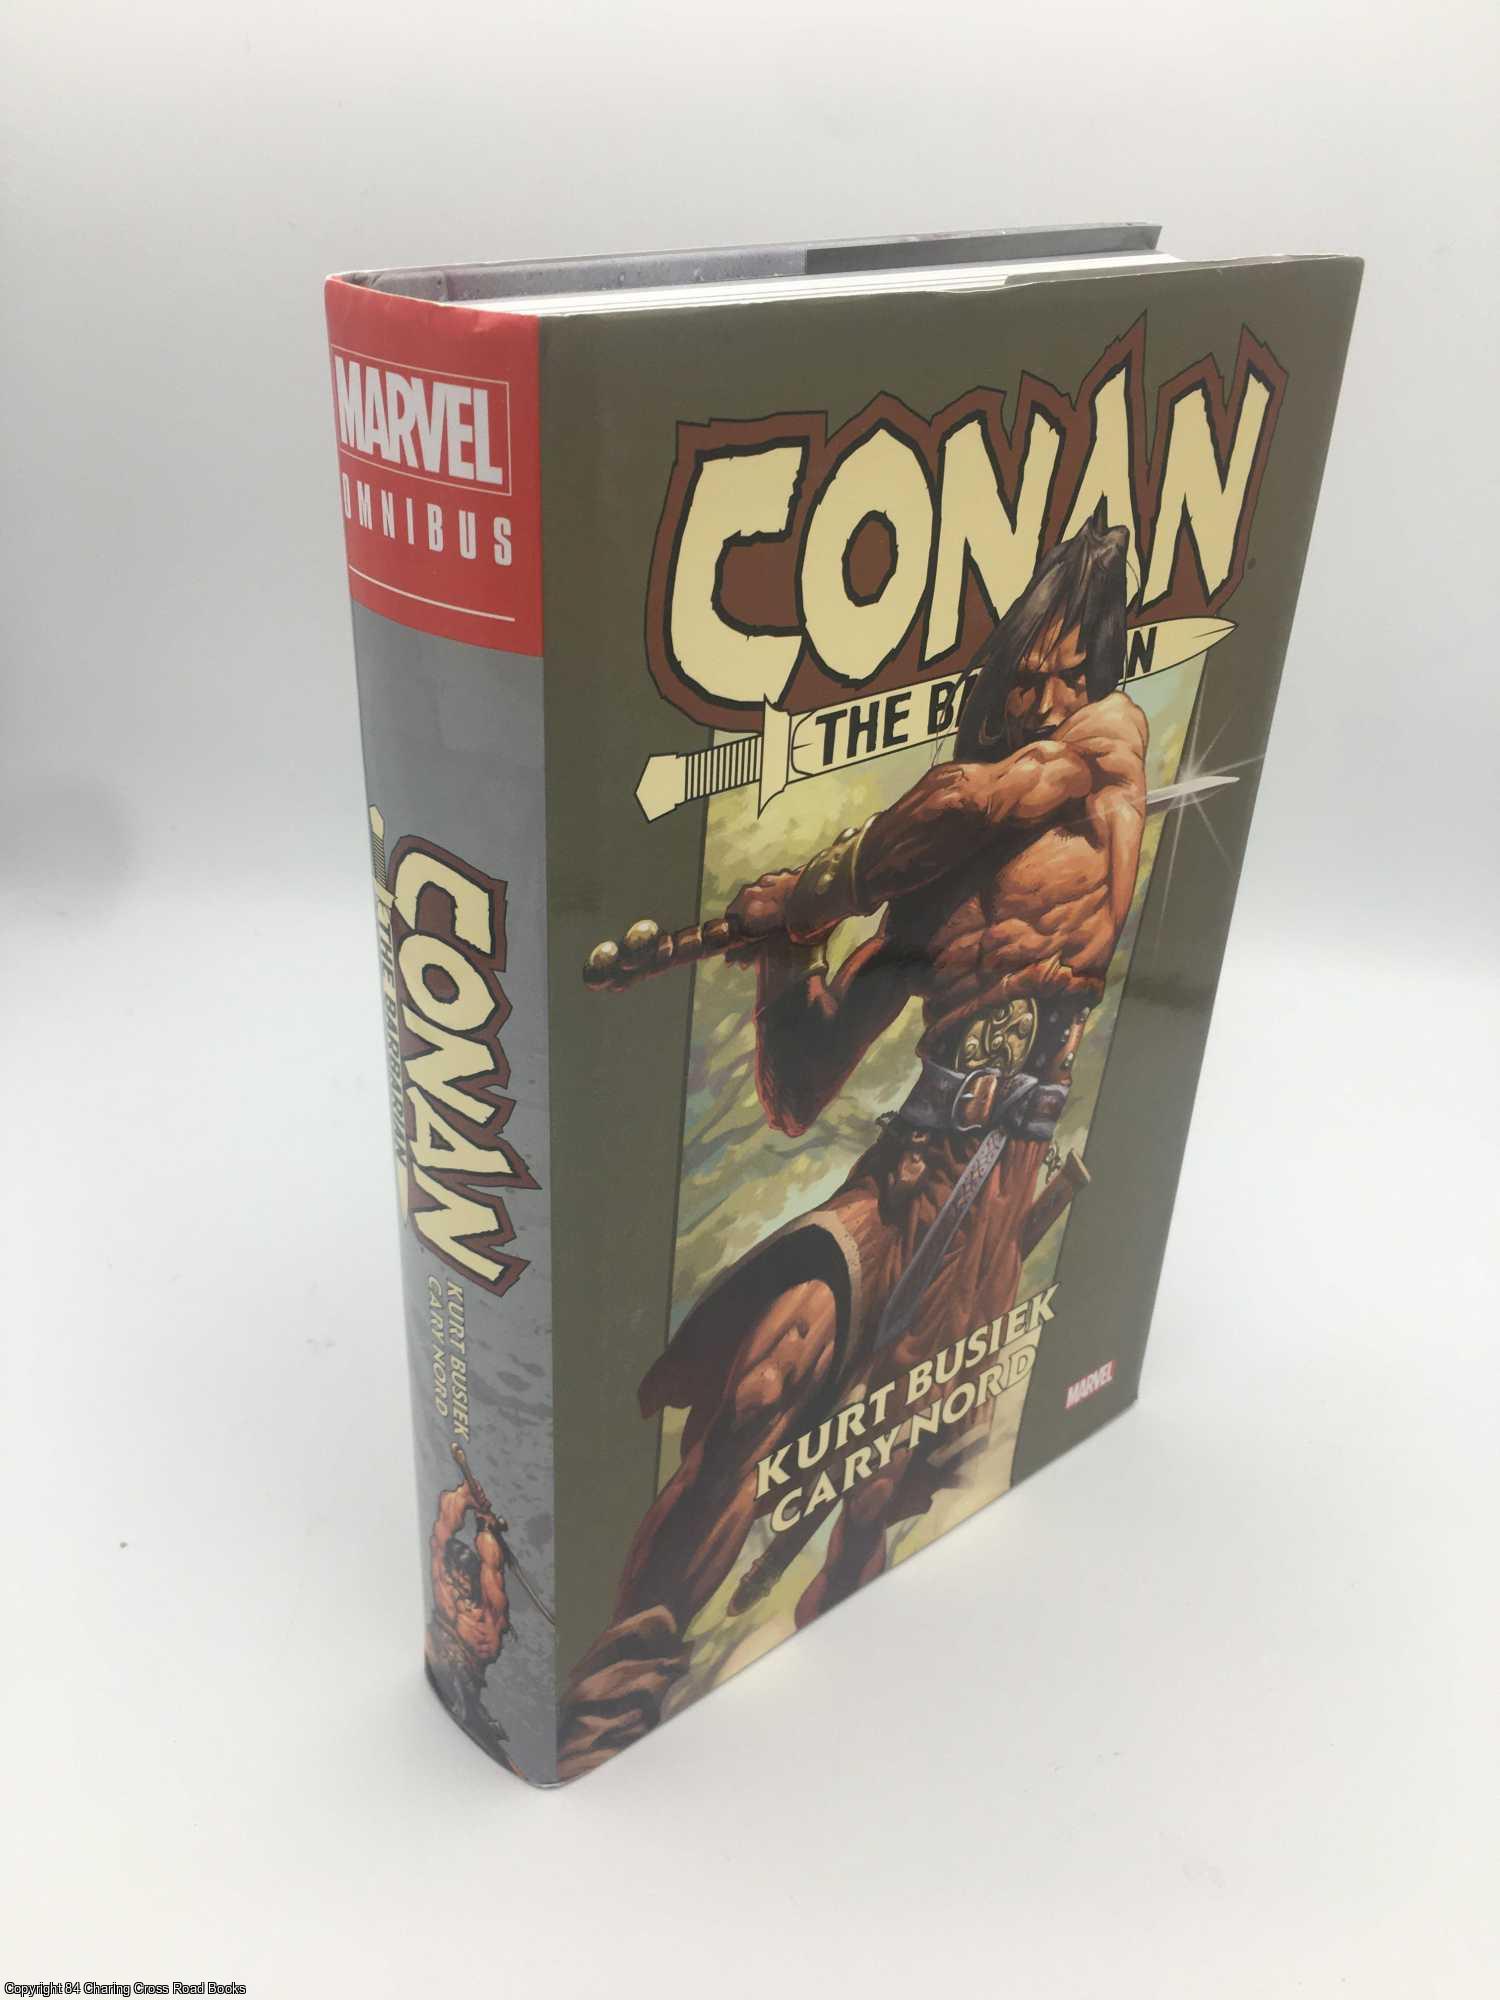 Busiek - Conan the Barbarian by Kurt Busiek Omnibus